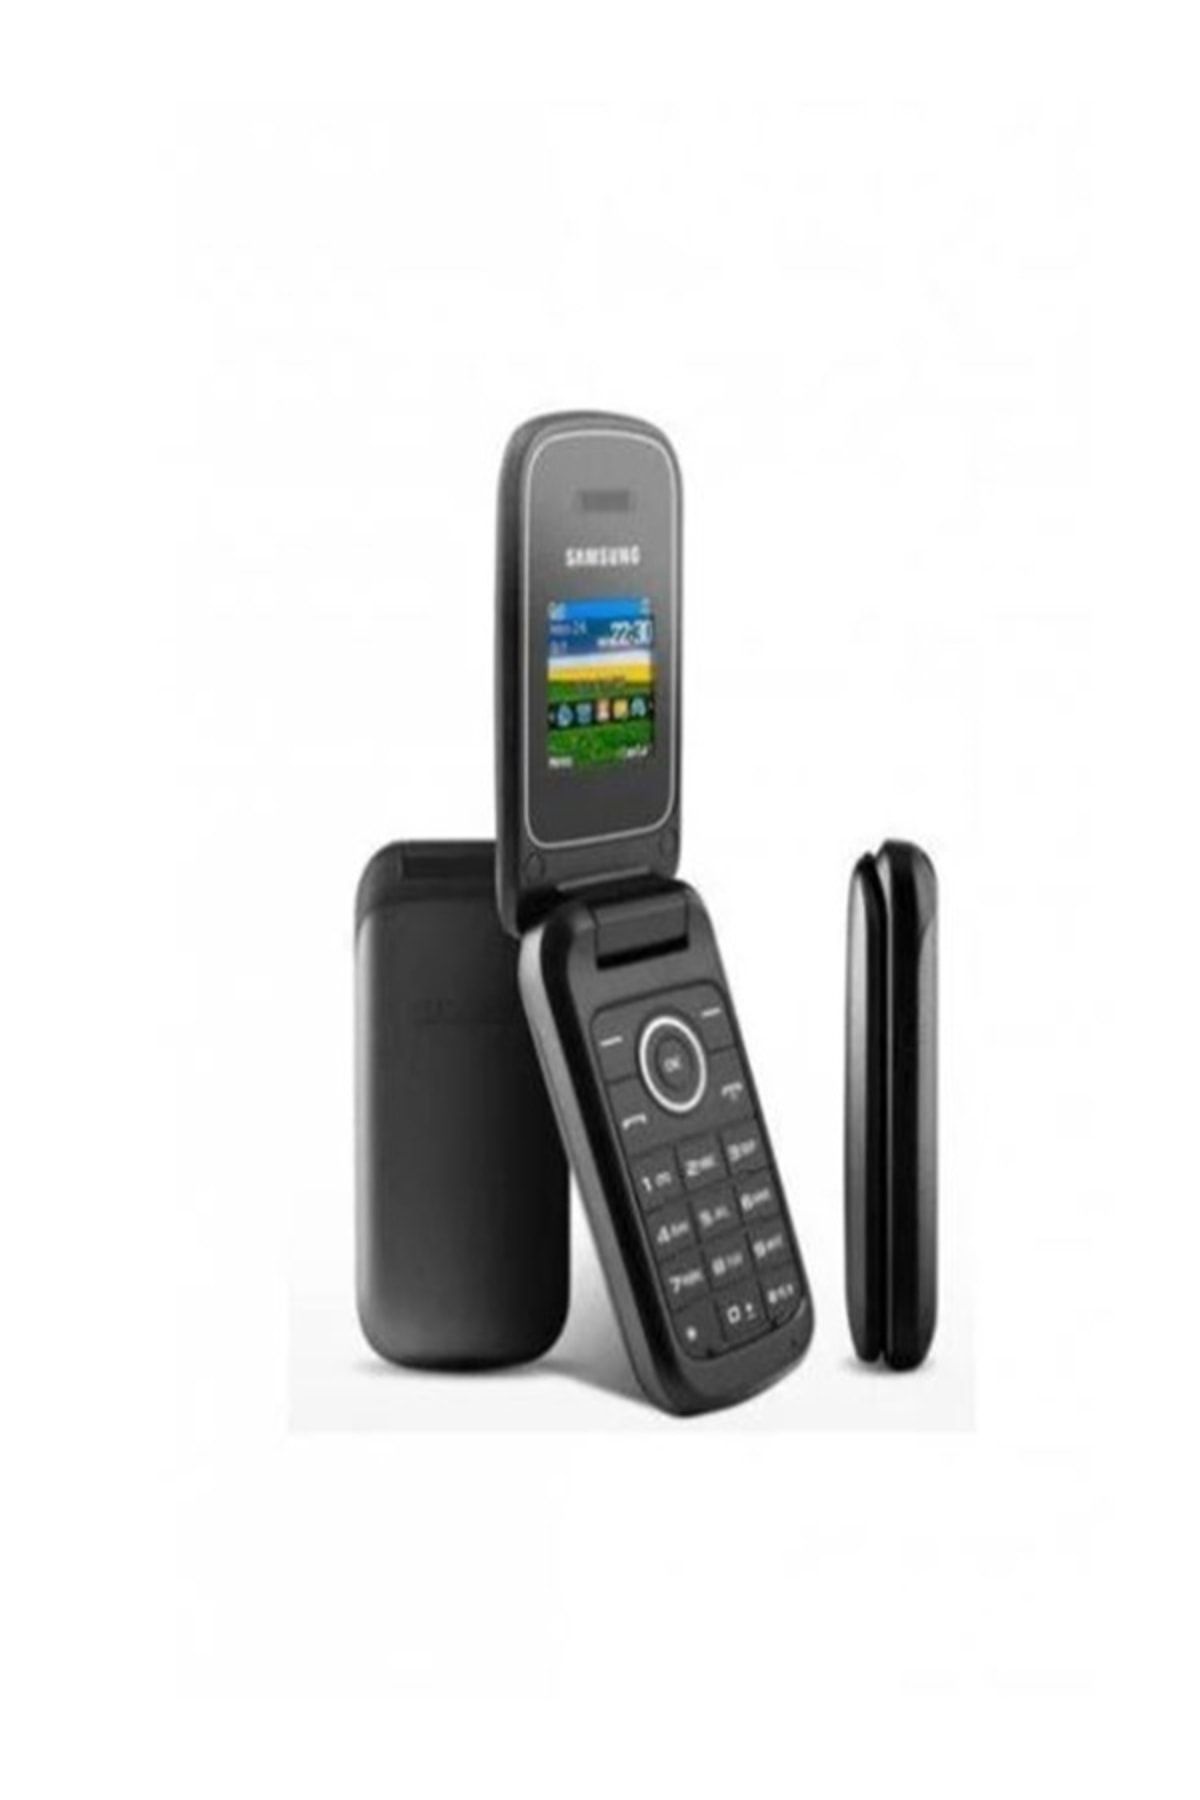 Samsung Beyzelif Butik Gt-e1270 Tuşlu Kapaklı Cep Telefonu Siyah Renk Yaşlılar Için Ideal